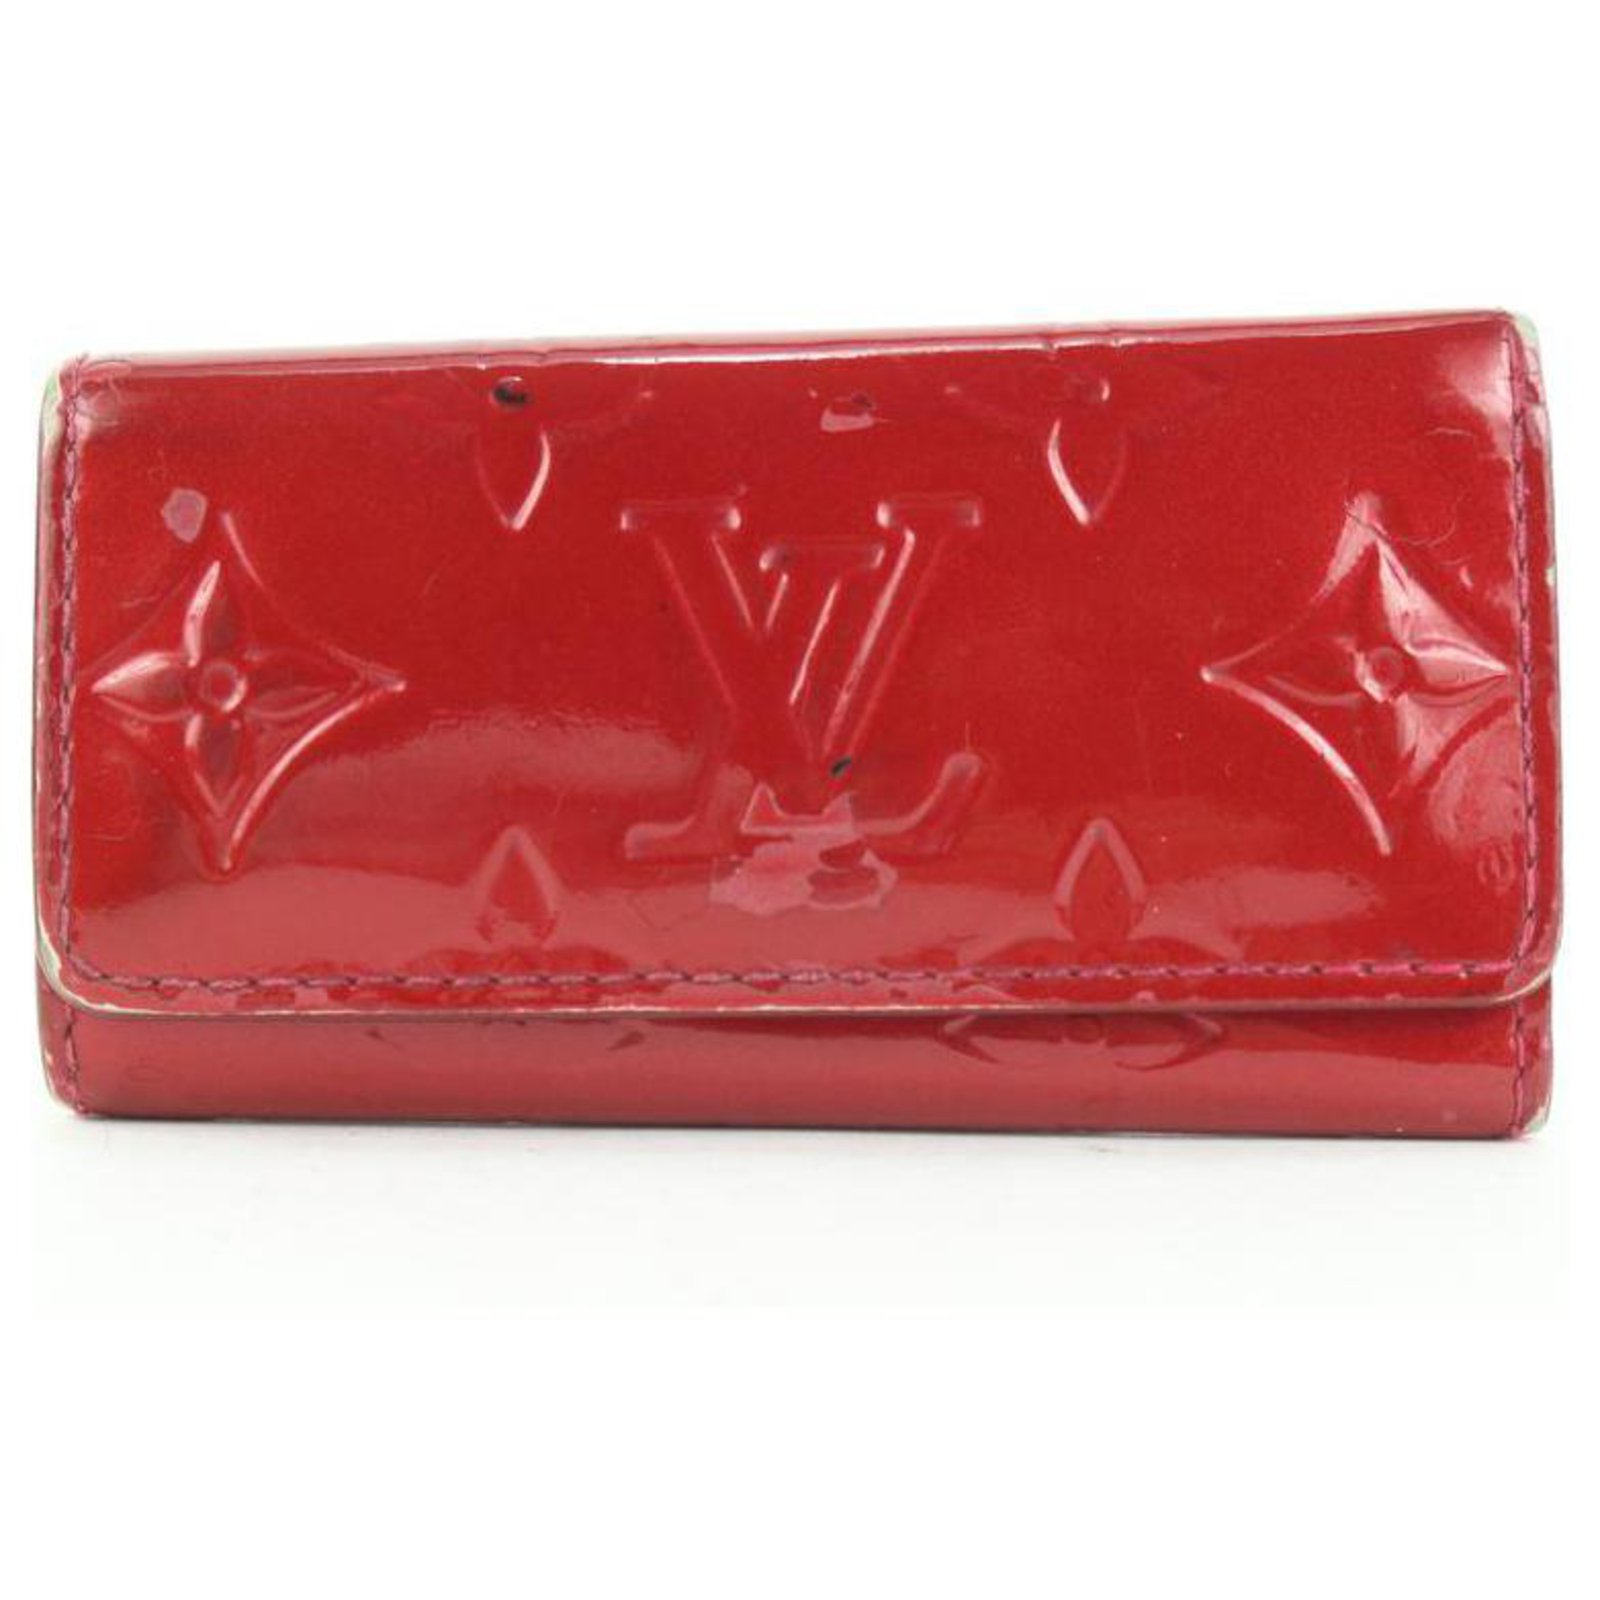 Louis Vuitton Monogram Vernis Multicles 4 Key Holder Wallet Case